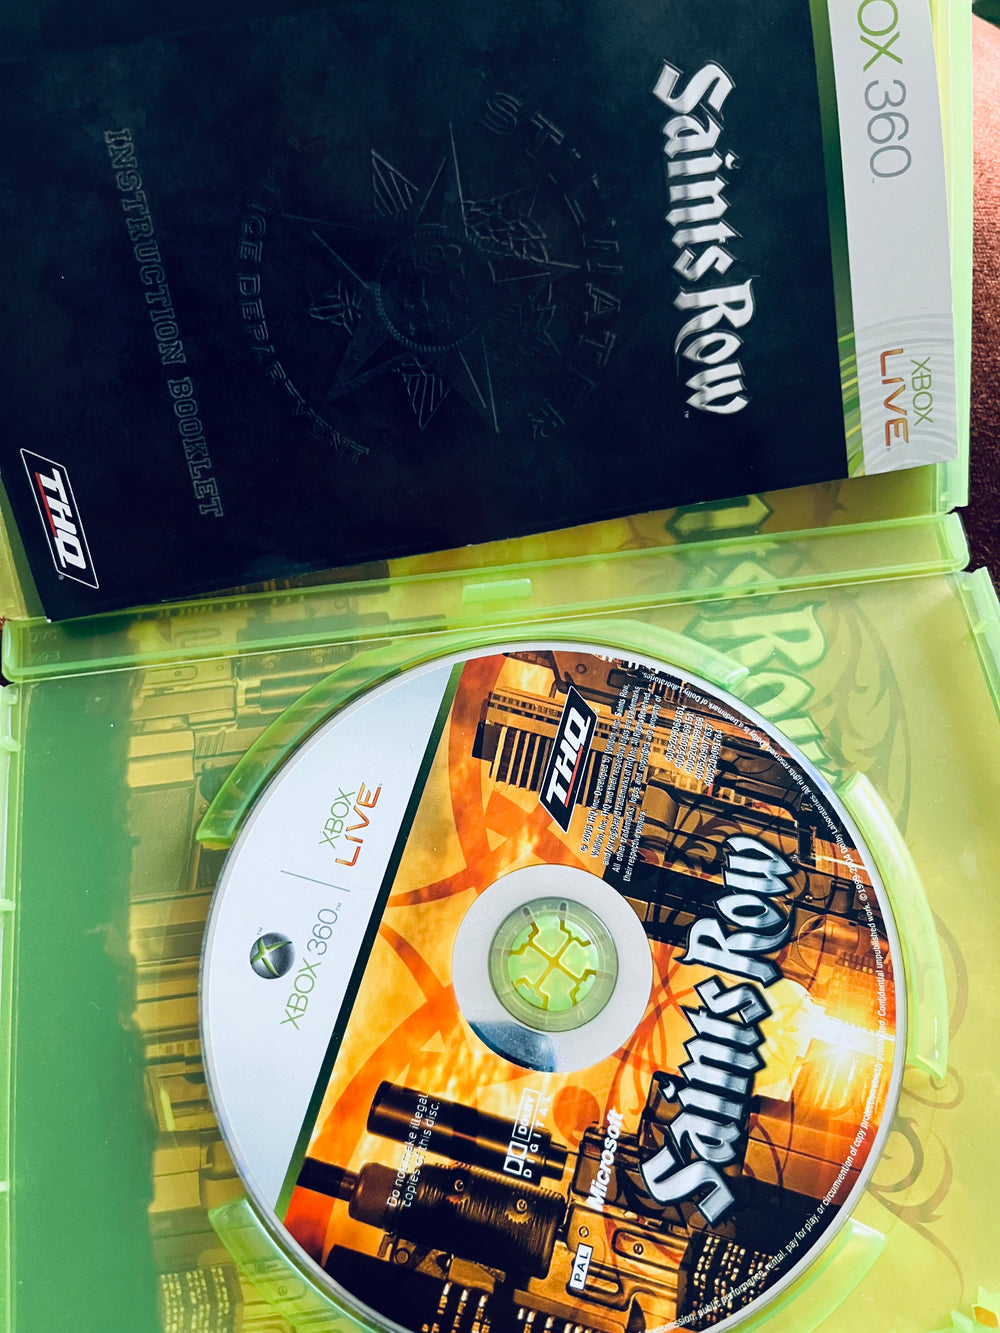 Saints Row. Xbox 360.